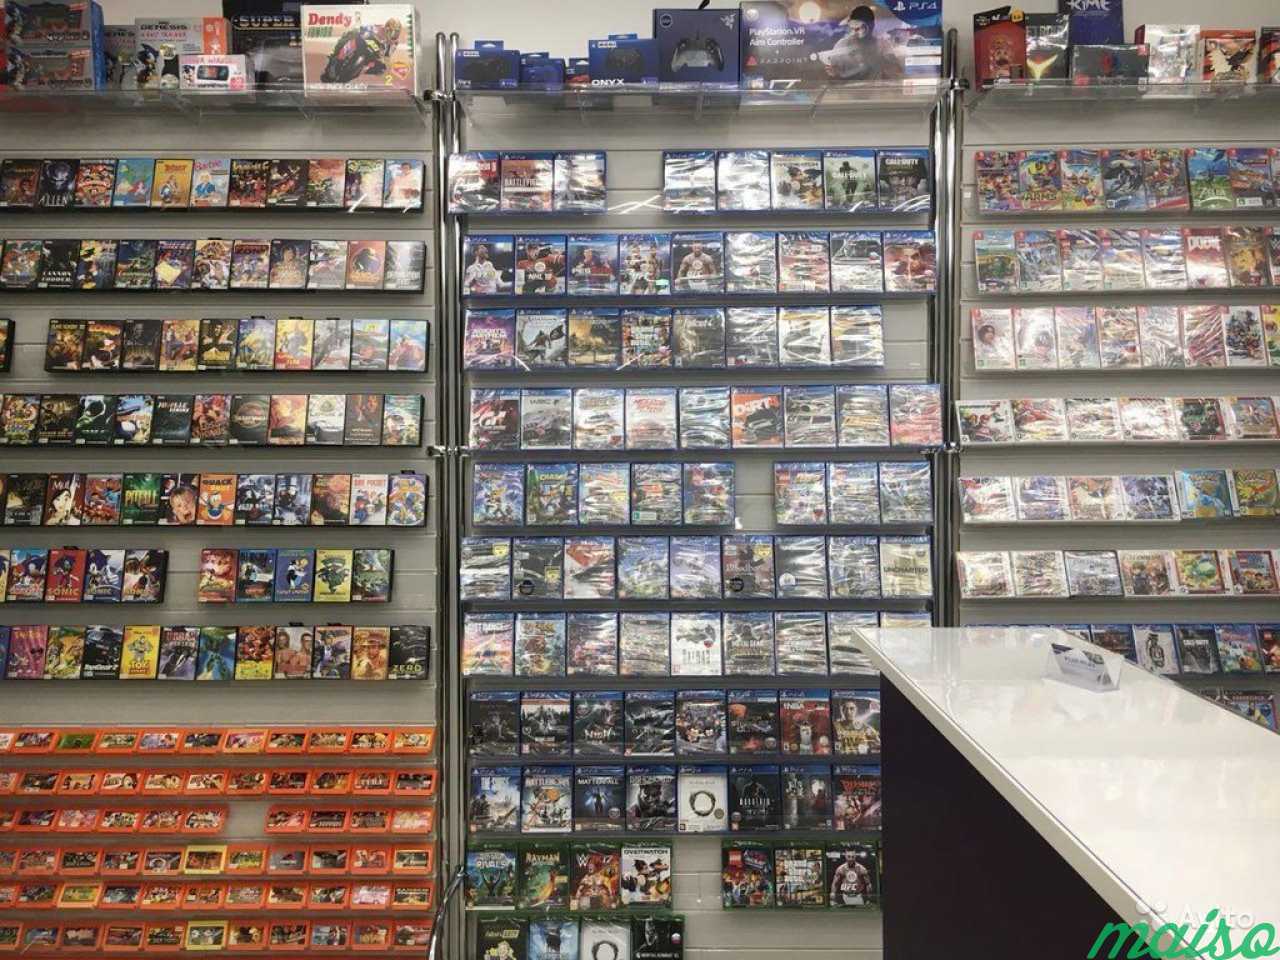 Игра где магазин где продают. Магазин дисков с играми. Игра "магазин". Магазин с игровыми дисками. Магазин дисков с играми для компьютера.